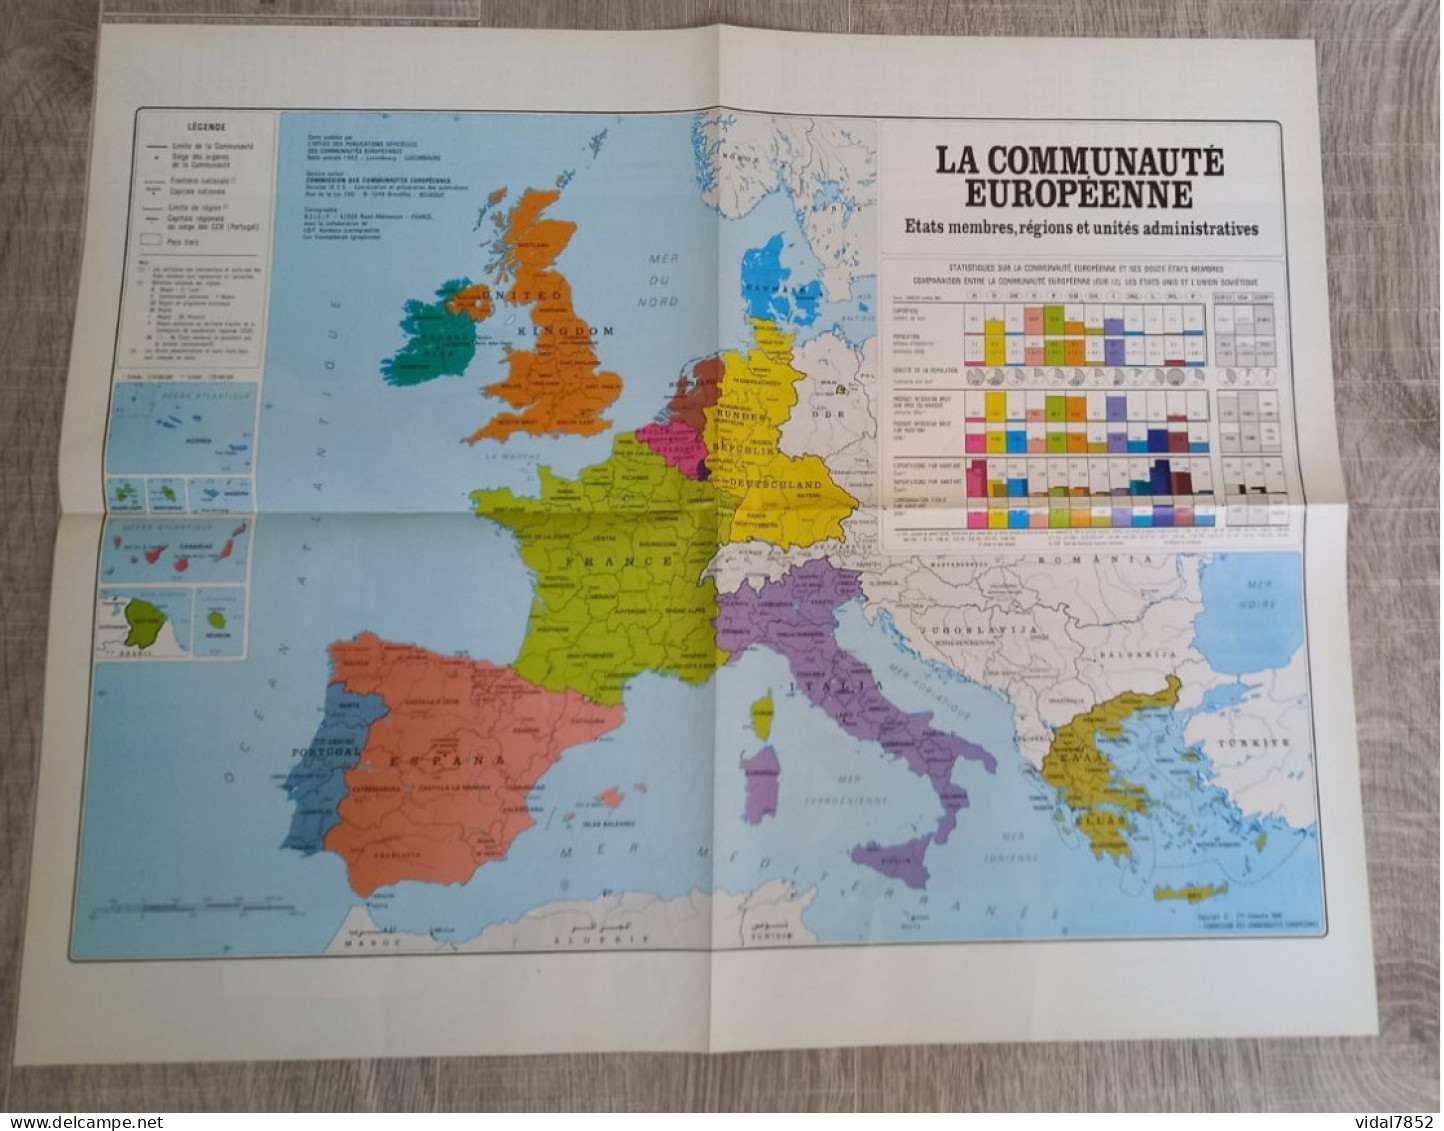 Calendrier-Almanach Des P.T.T 1991-Poster Intérieur Communauté Européenne--Tom Jerry Département AIN-01-Référence 325 - Groot Formaat: 1991-00